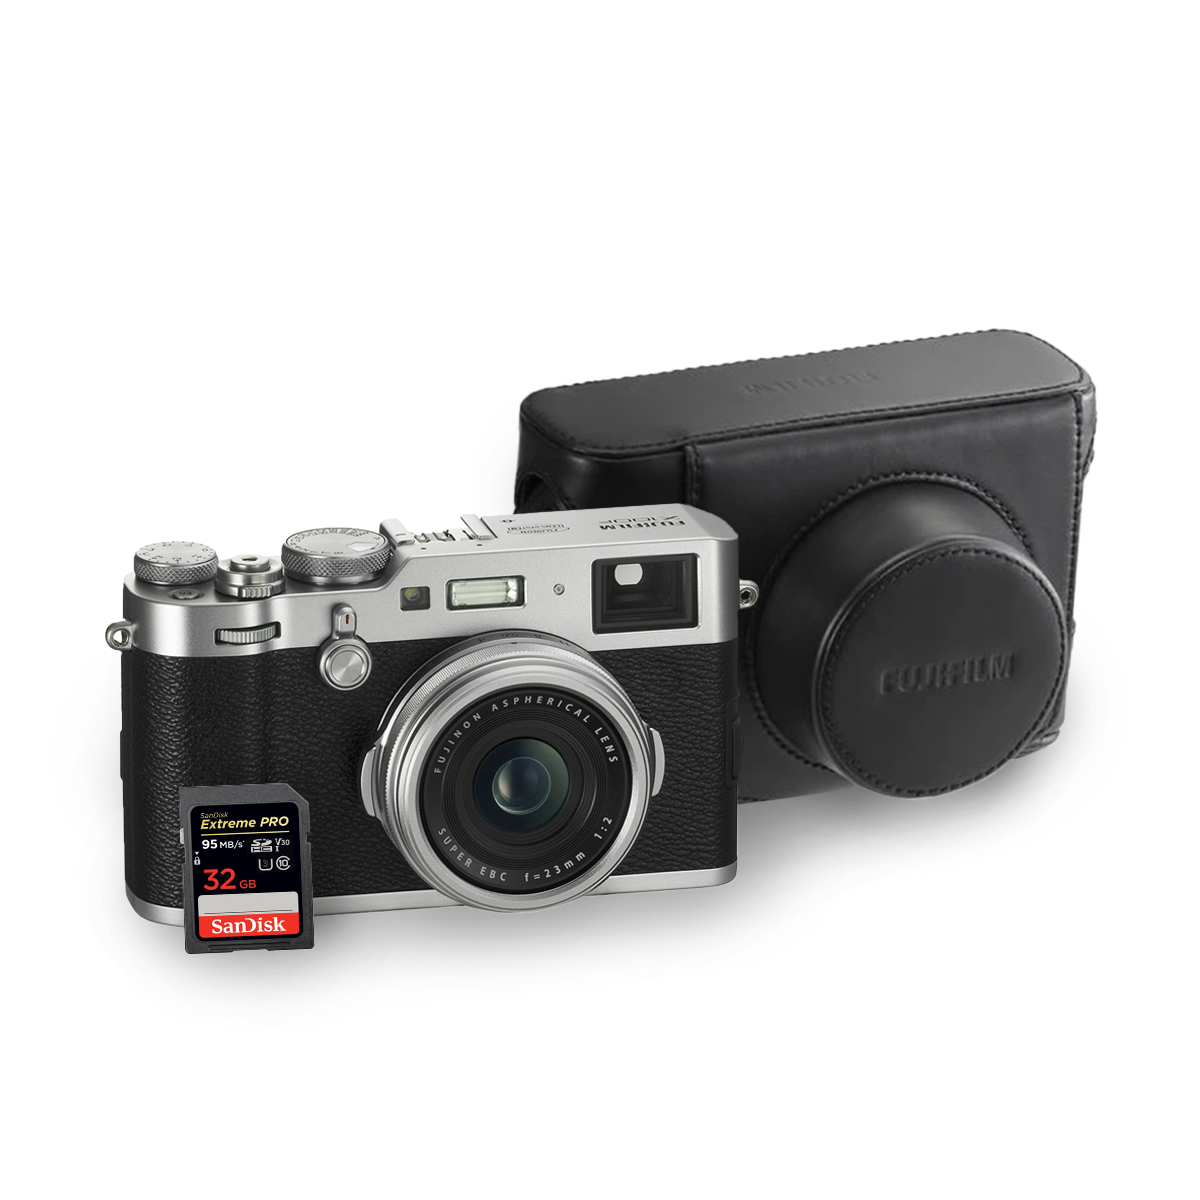 Fujifilm X100F Digital Camera (Silver)